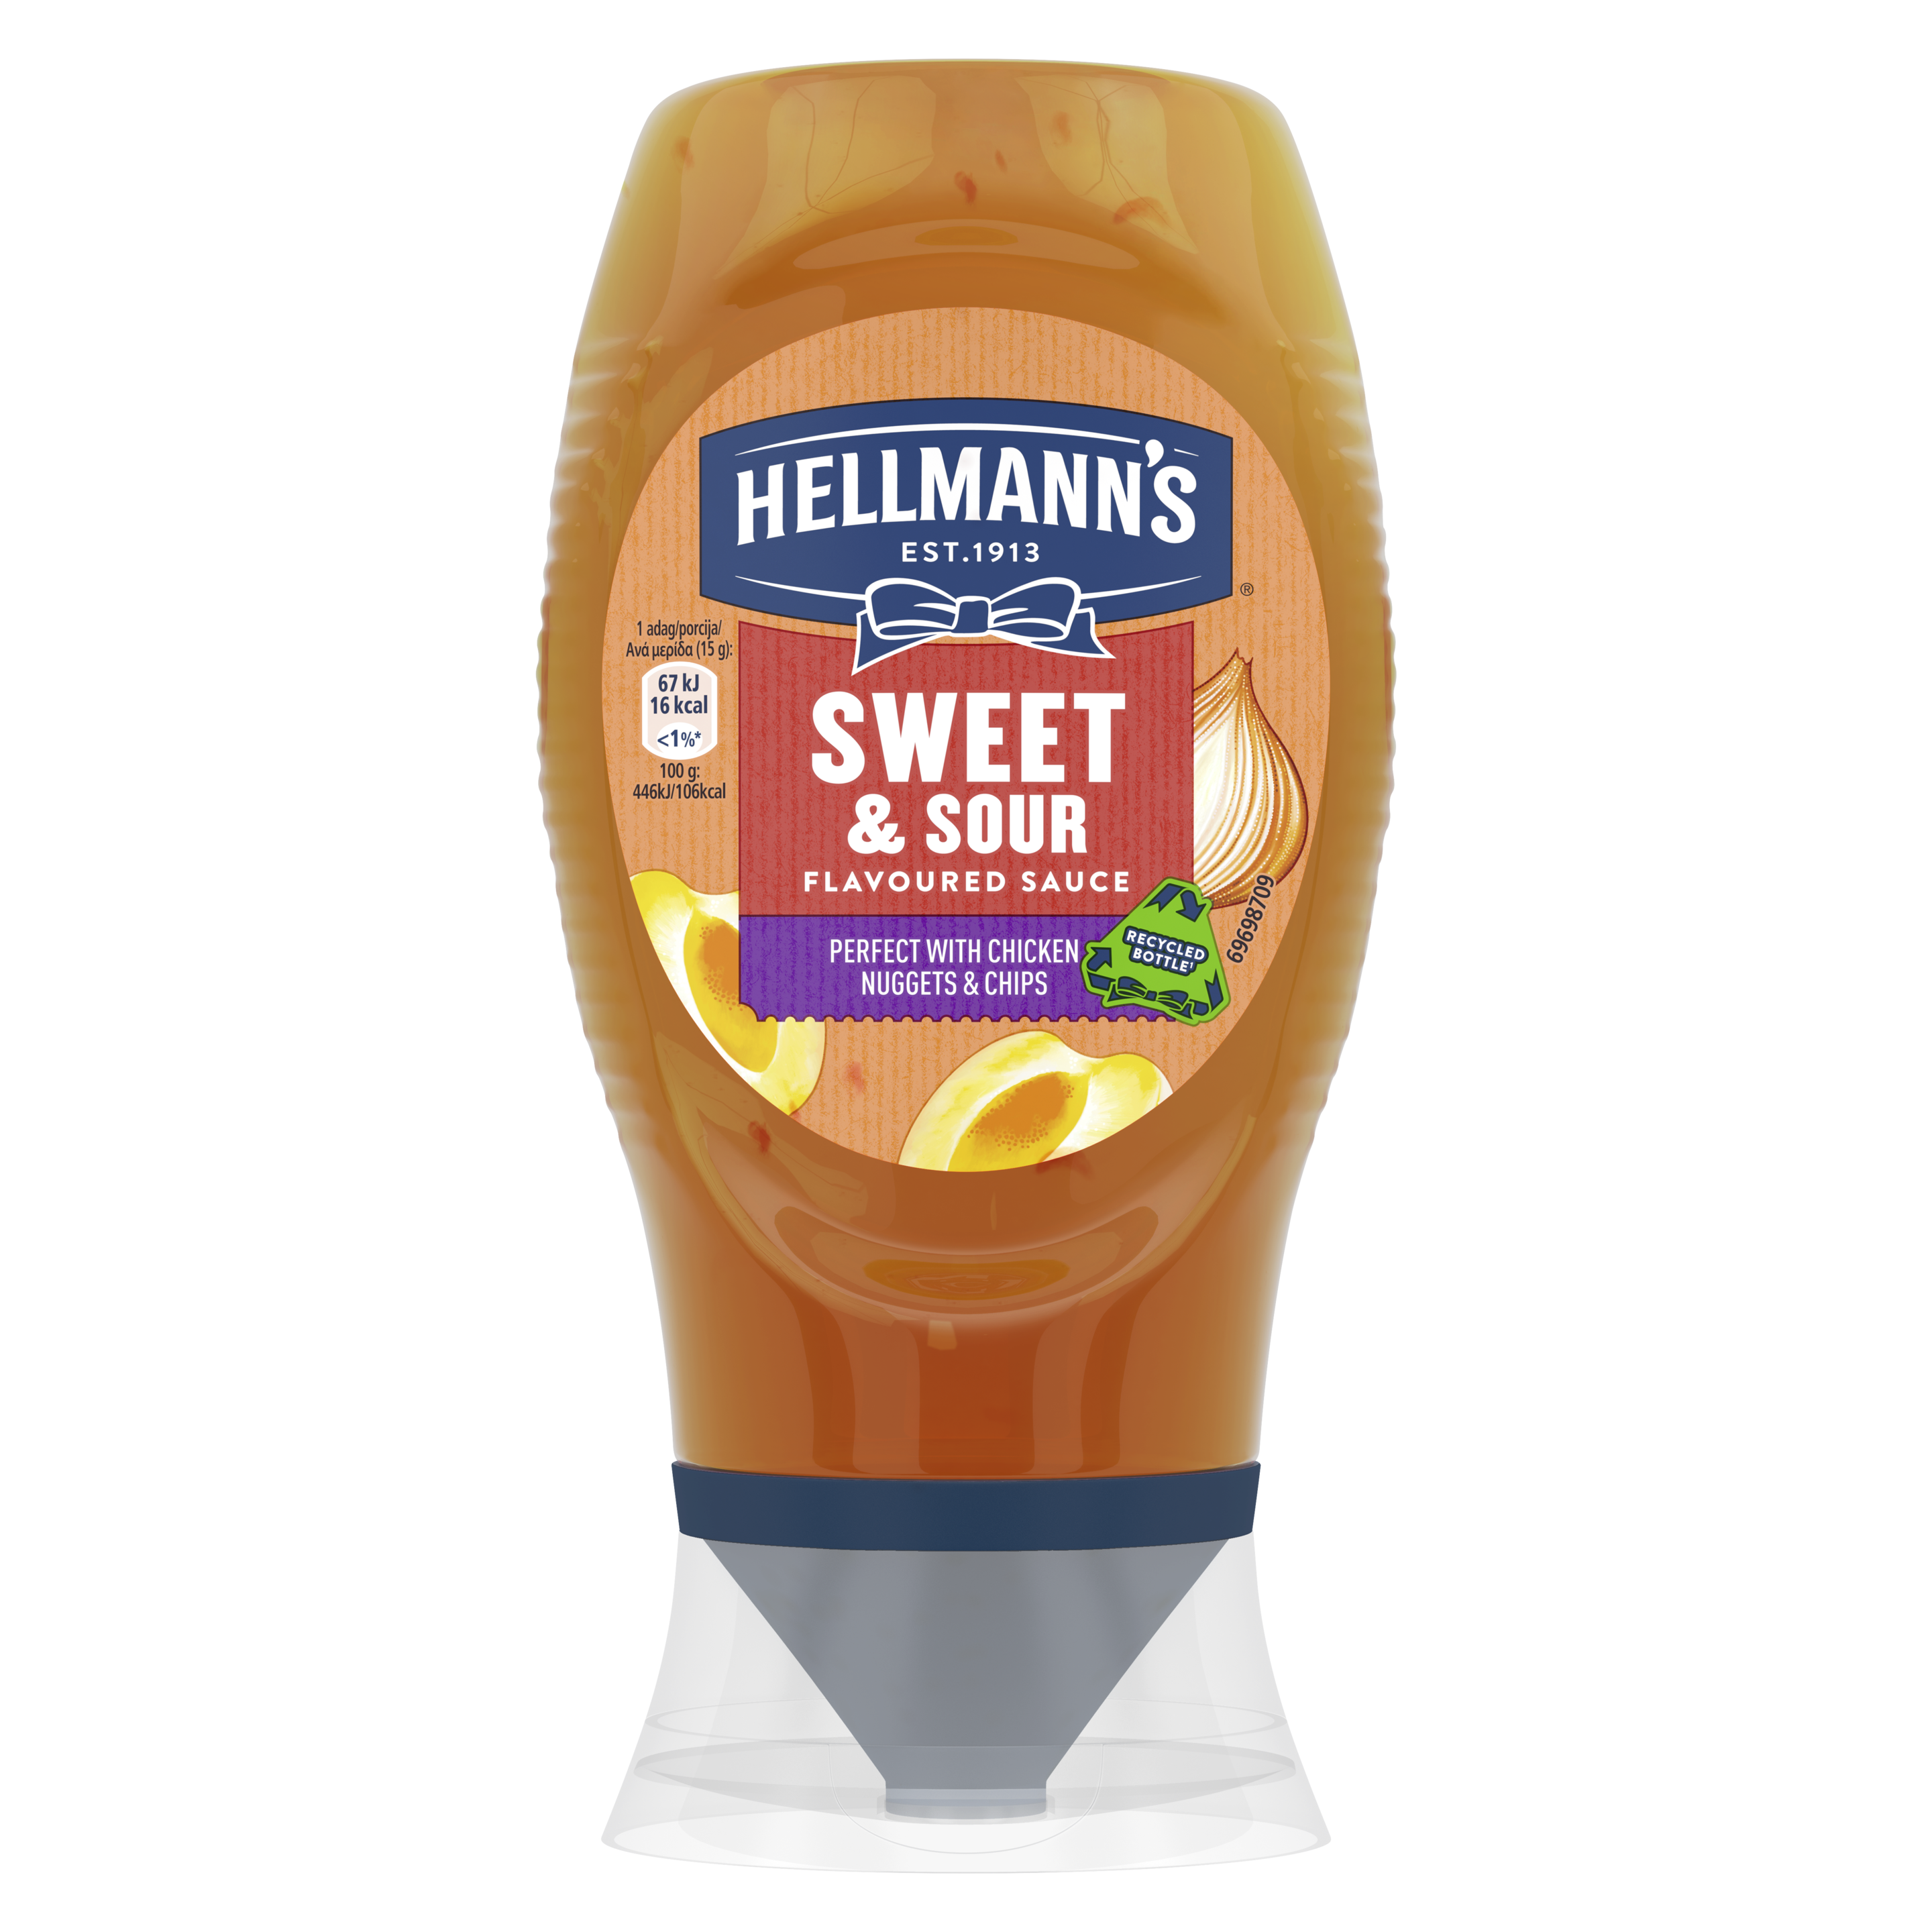 Hellmann's Sweet & Sour sauce